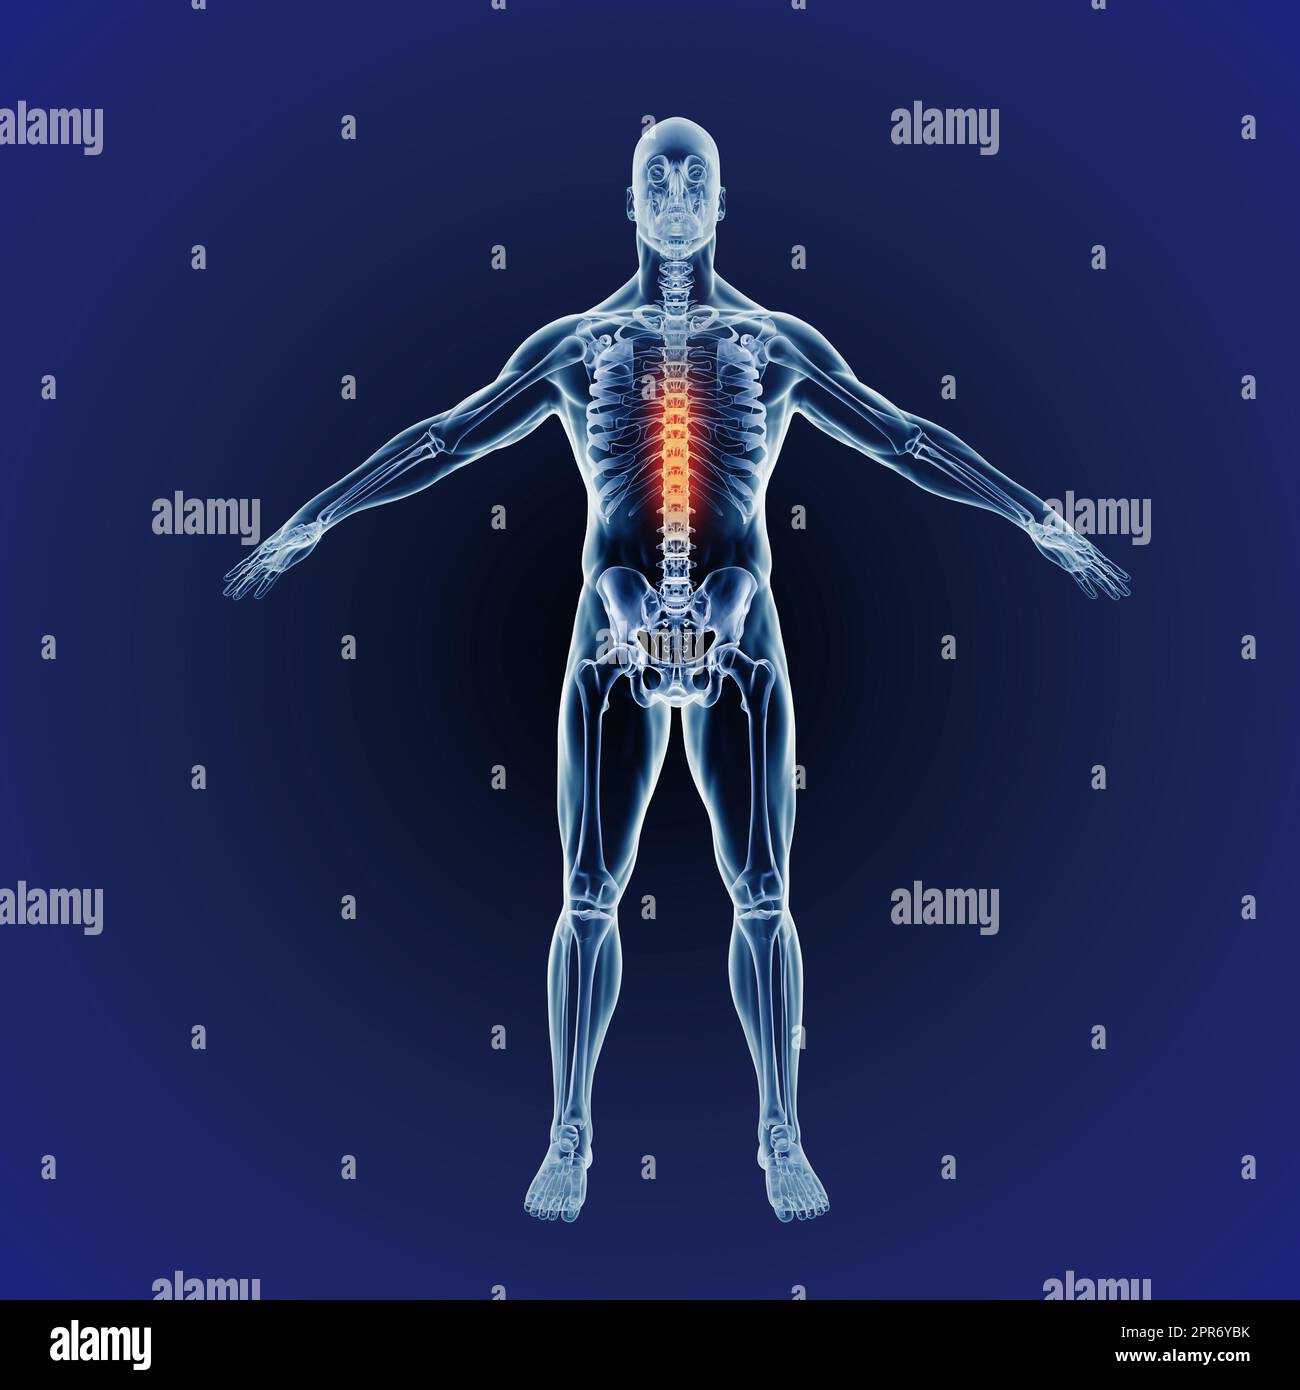 Schmerzen im oberen Rücken. Wenn eine Entzündung eintritt. Computergenerierte Darstellung des menschlichen Körpers, die die Skelettstruktur anzeigt Stockfoto